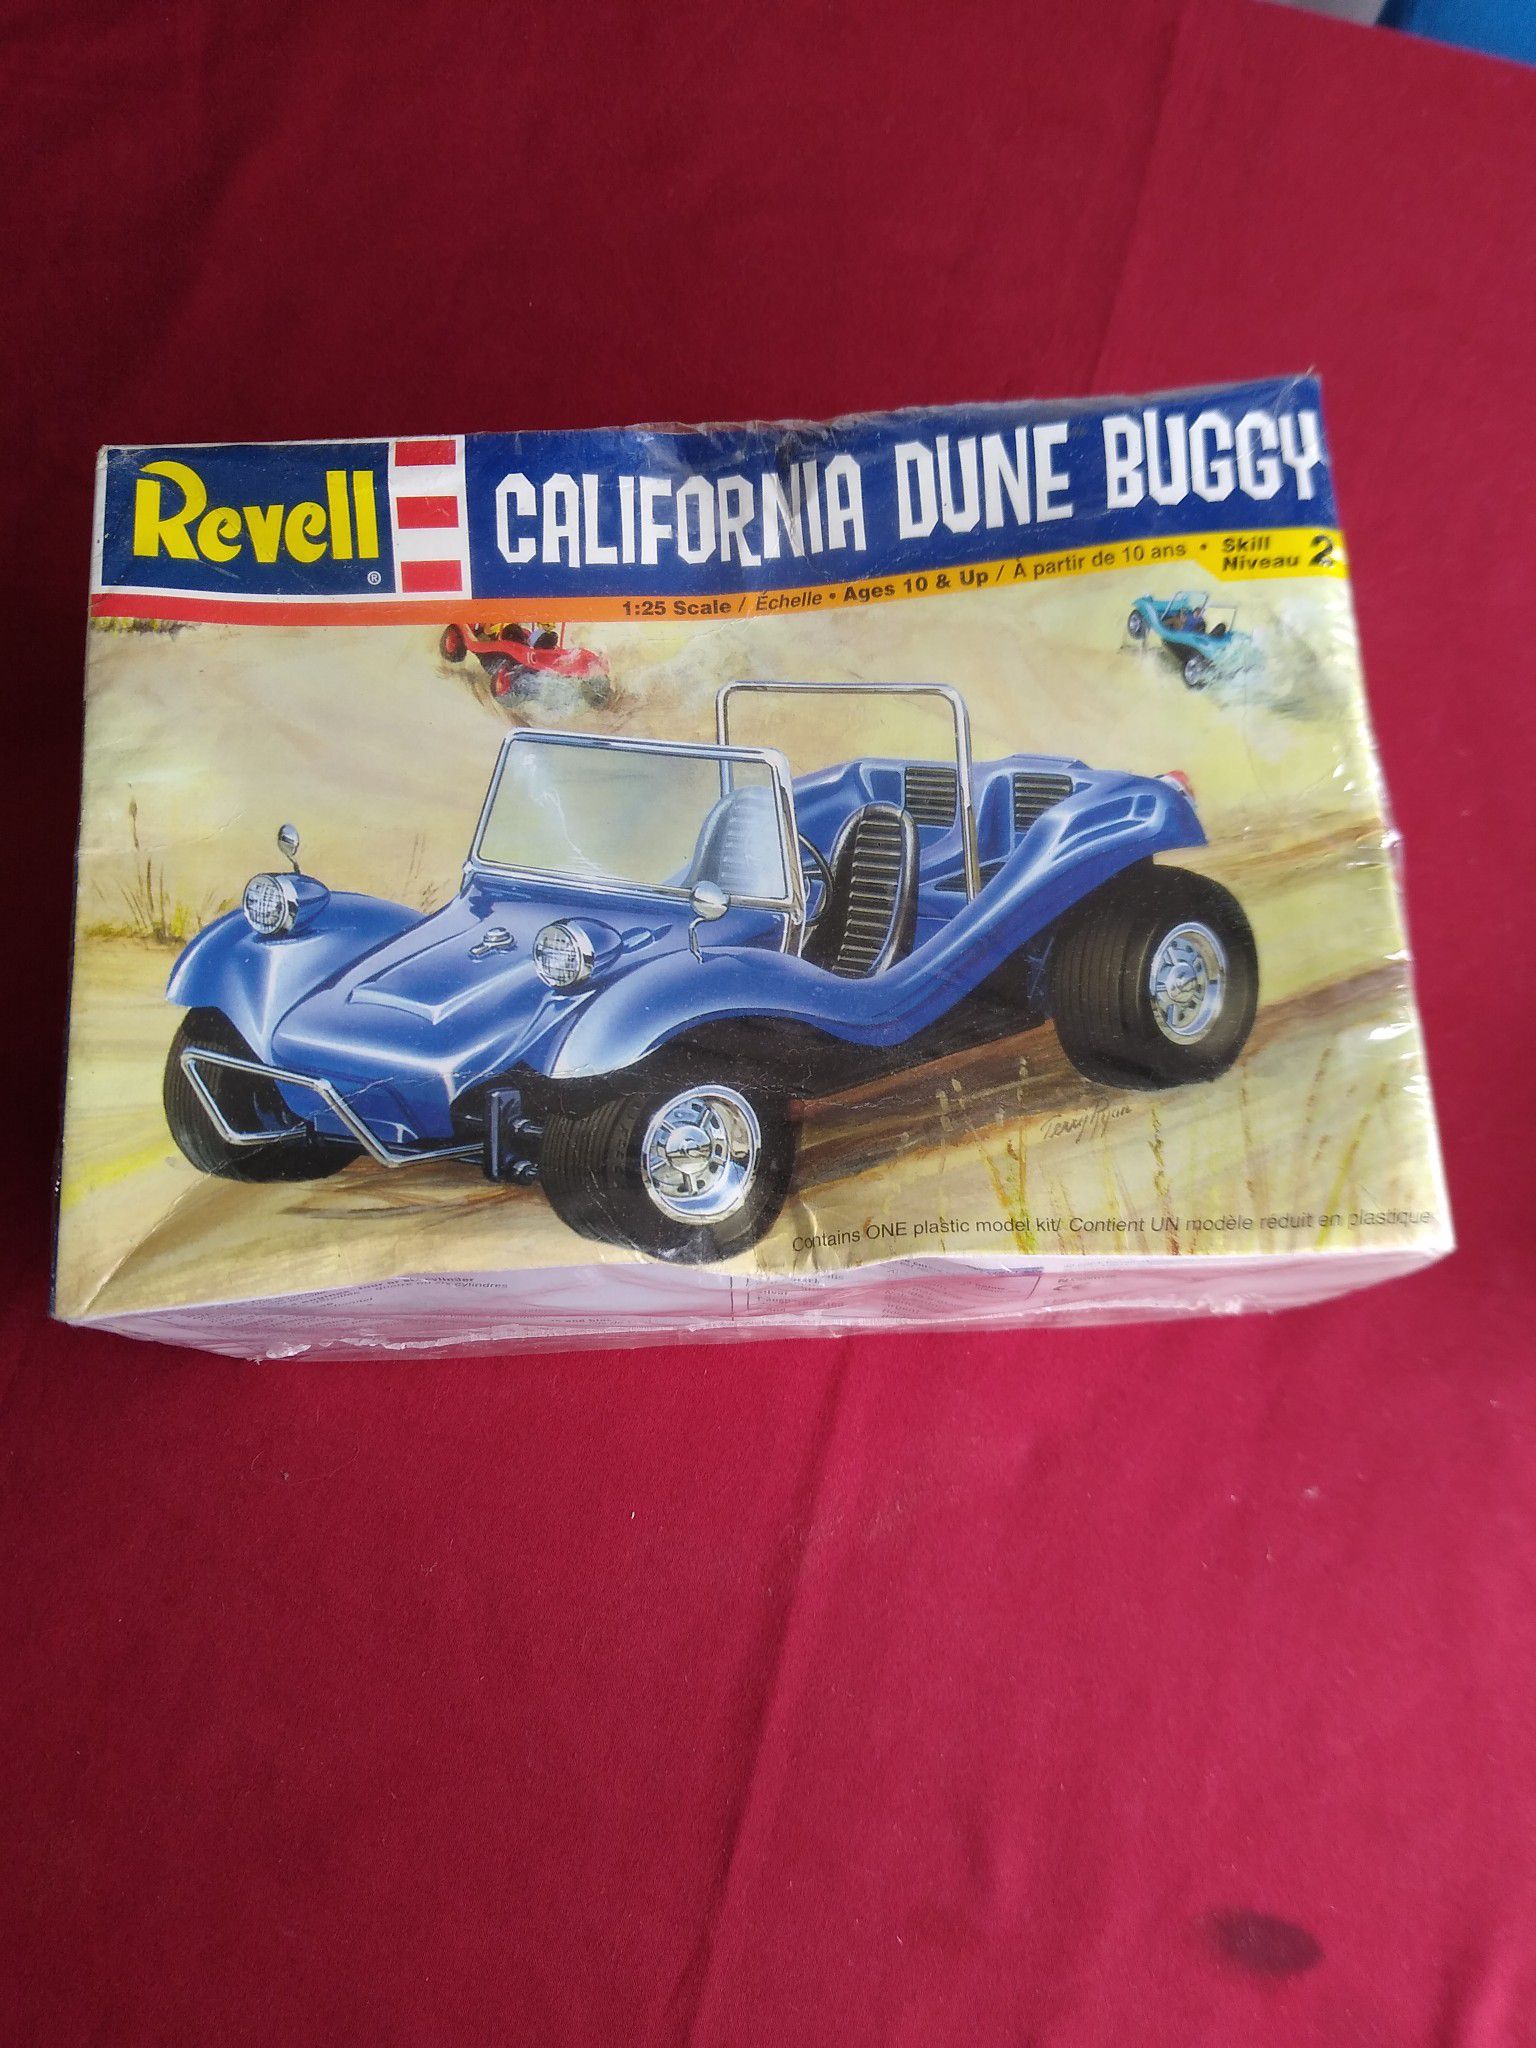 Vintage Revell California Dune Buggy model